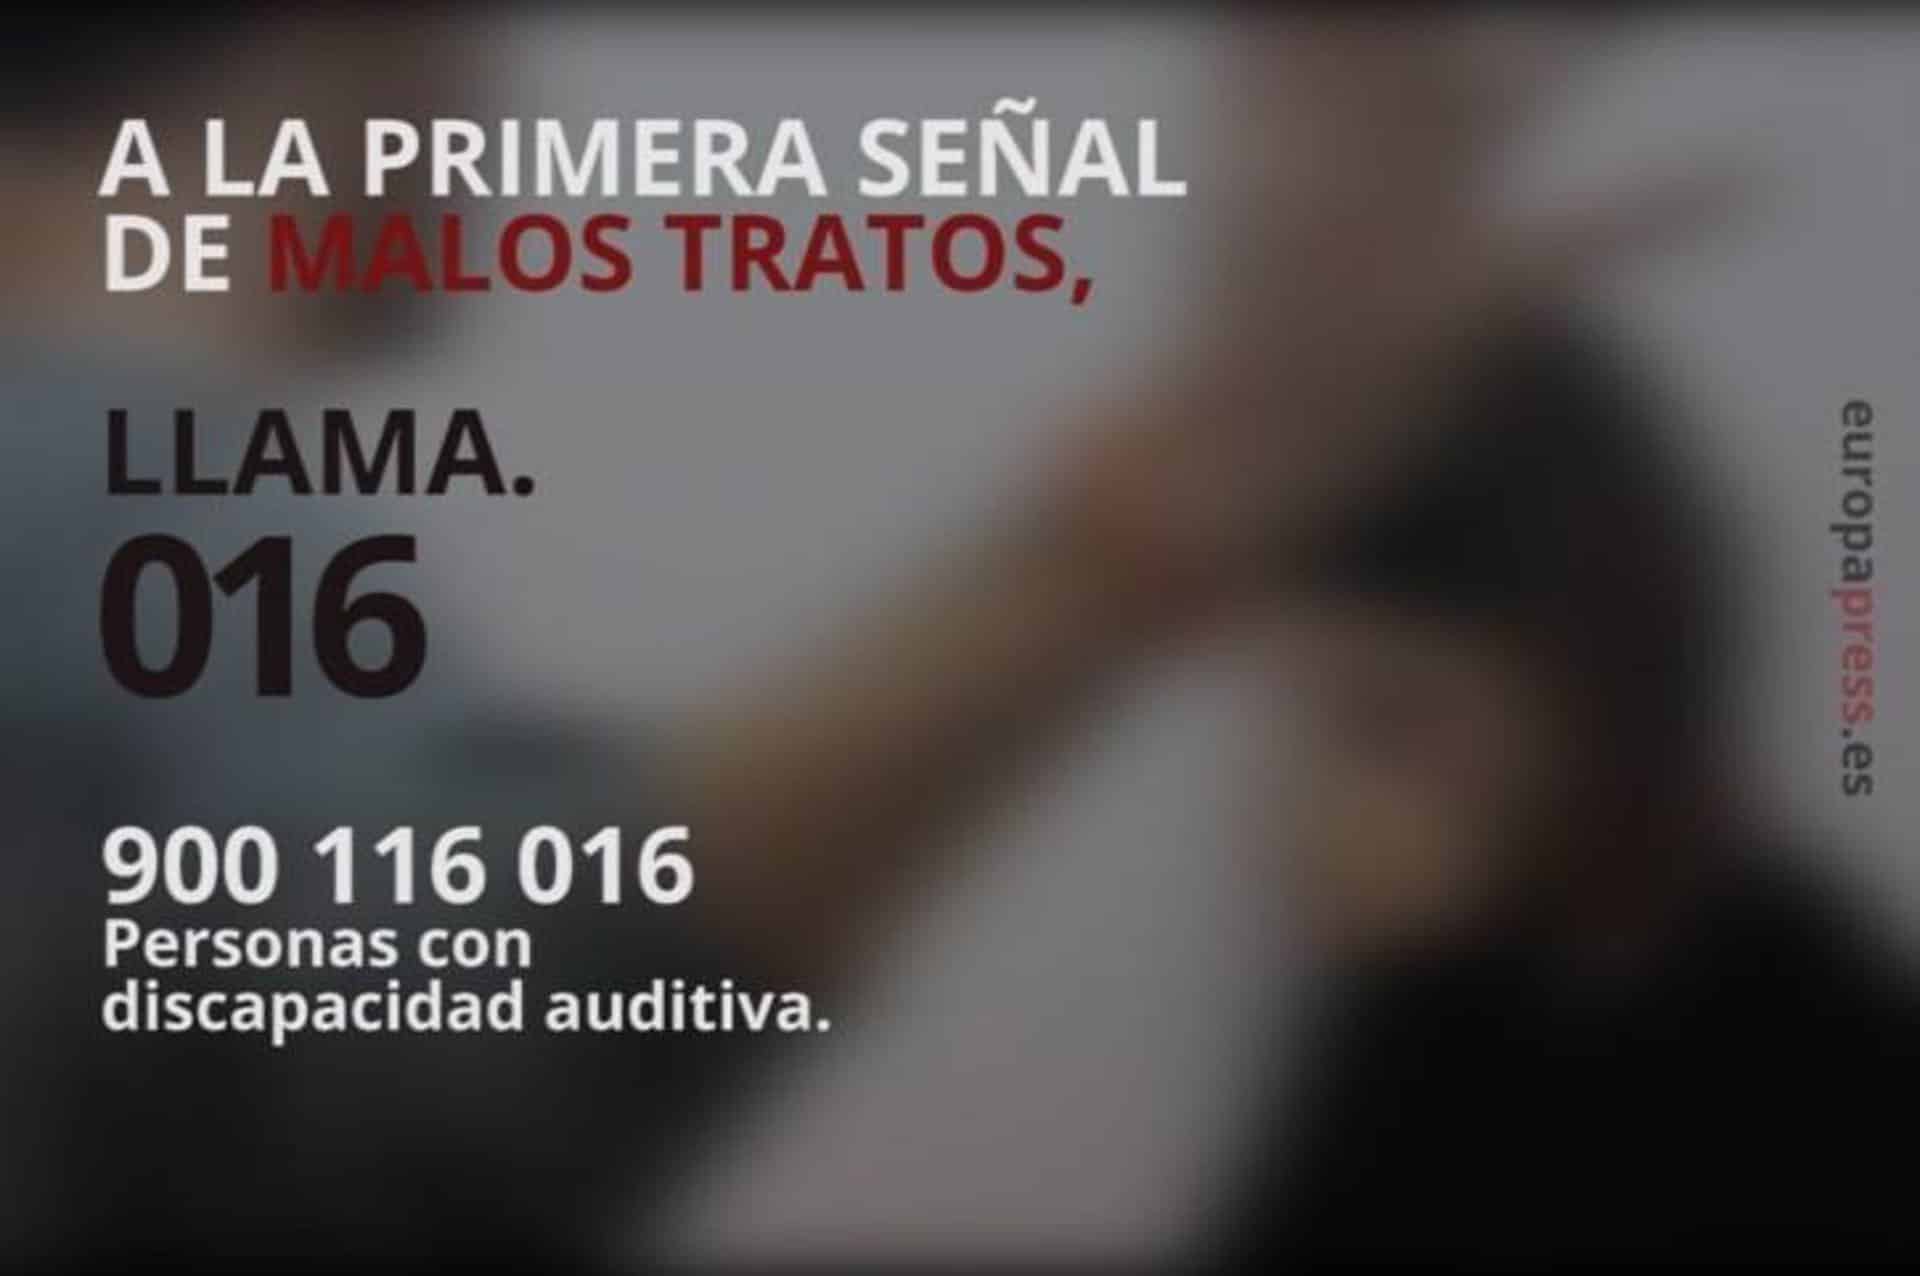 La Comunitat Valenciana registra 6.149 denuncias por violencia de género en el primer trimestre, un 28,3% más